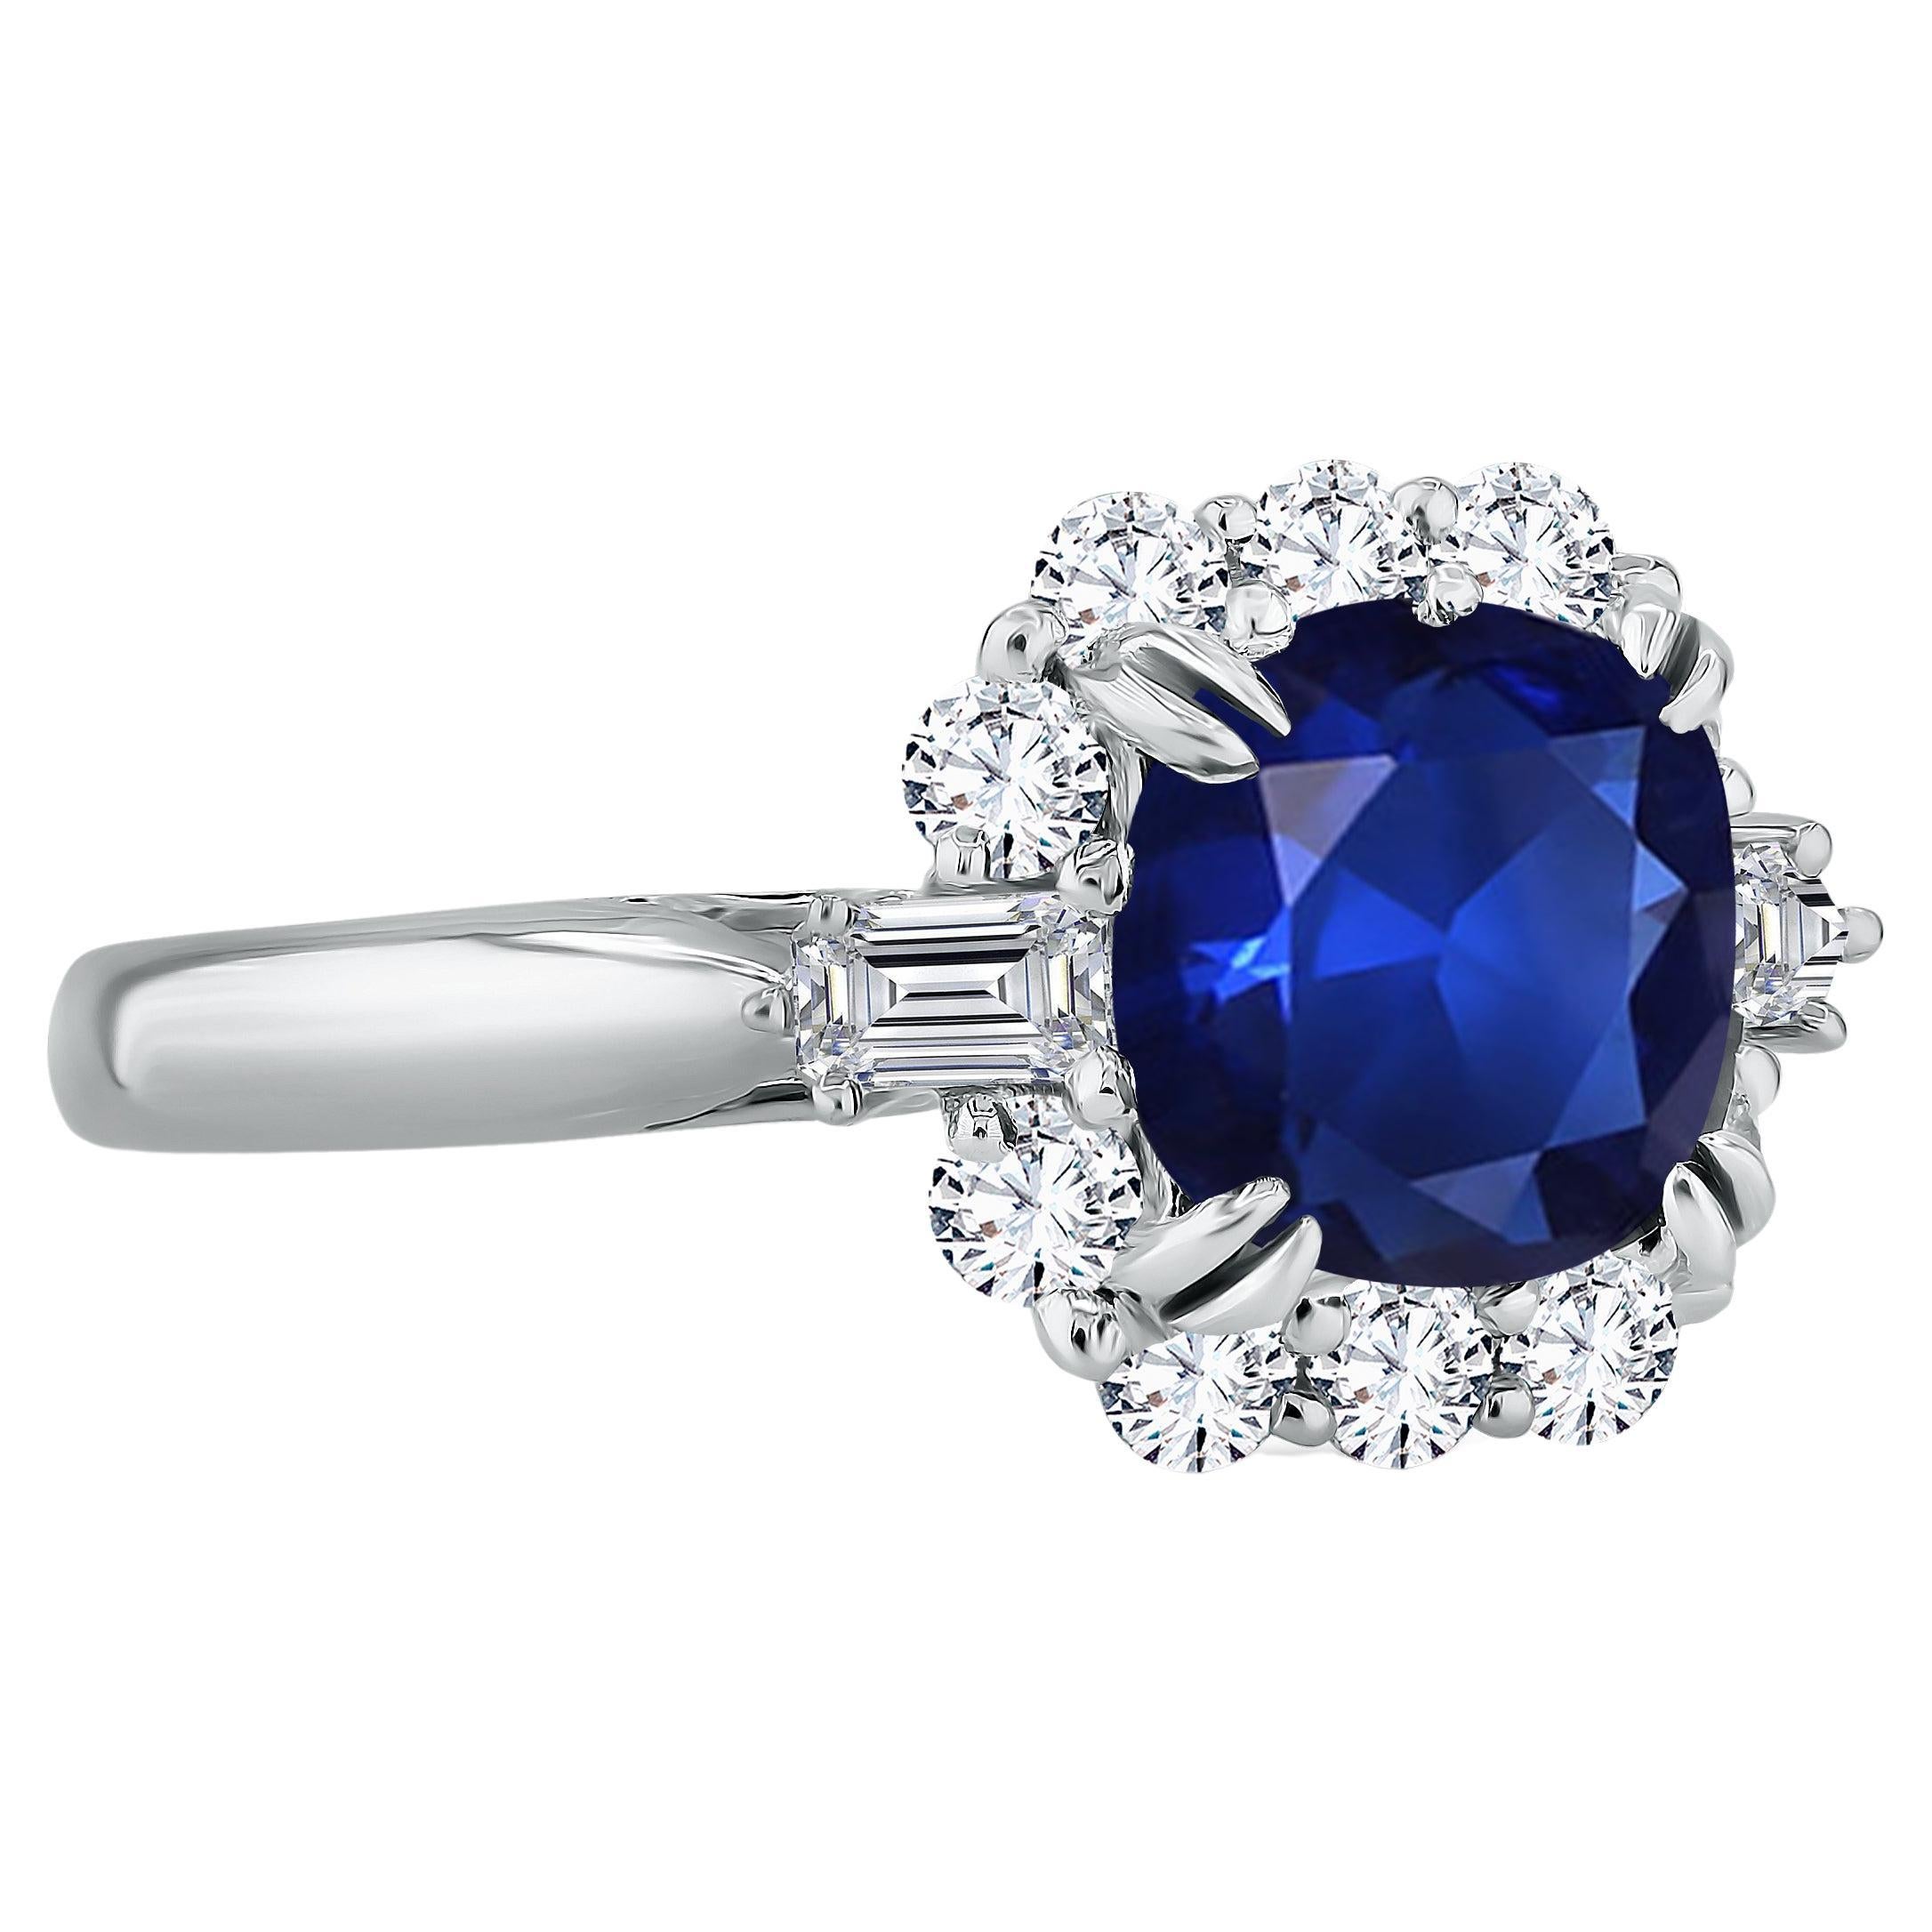 Bague halo de saphirs bleus taille coussin de 2,60 carats et diamants certifiés GIA, réf. 471